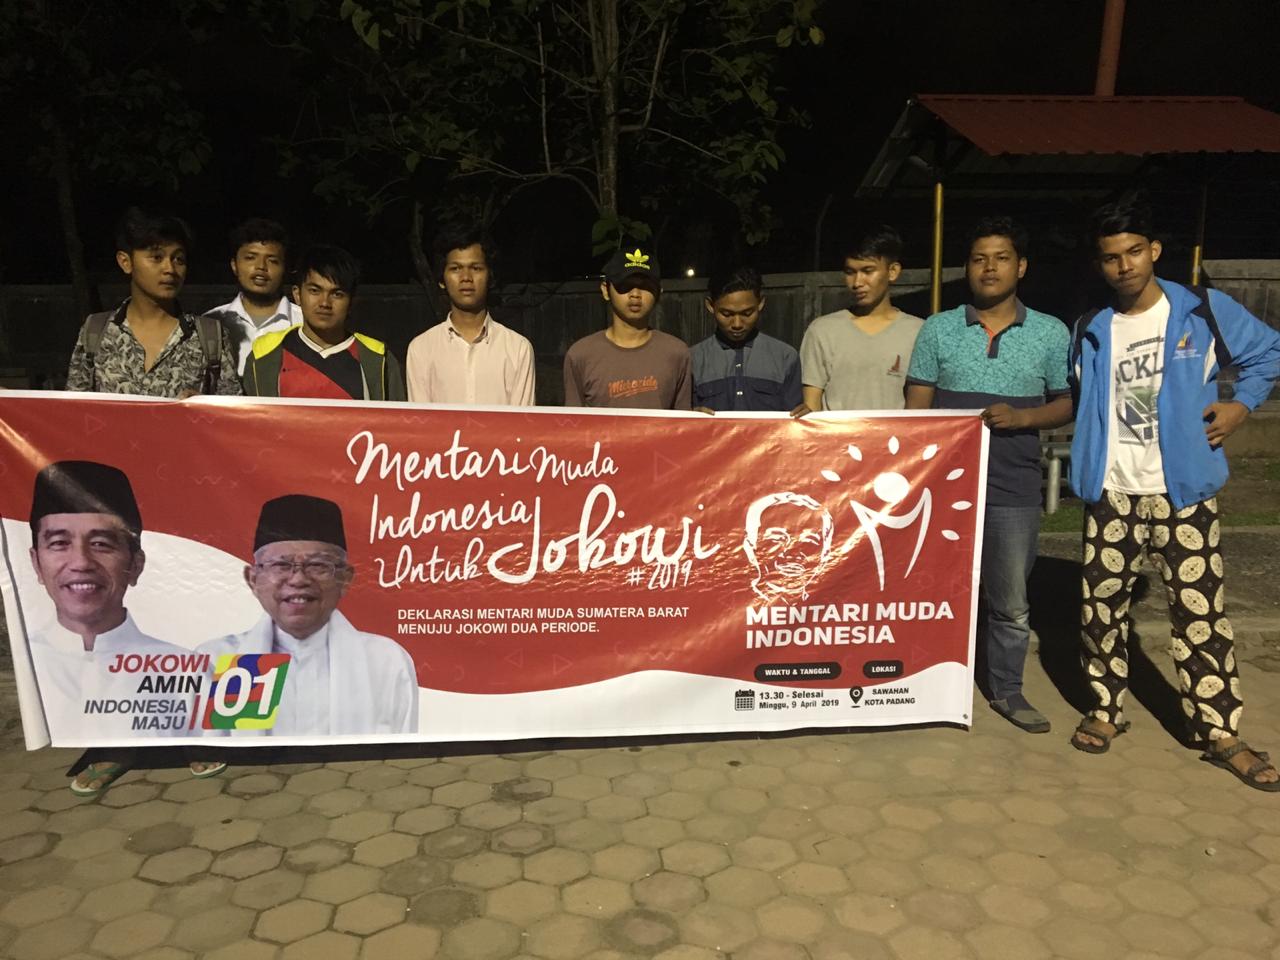 Mentari Muda Indonesia Deklarasi Dukungan Jokowi Di Bukittinggi